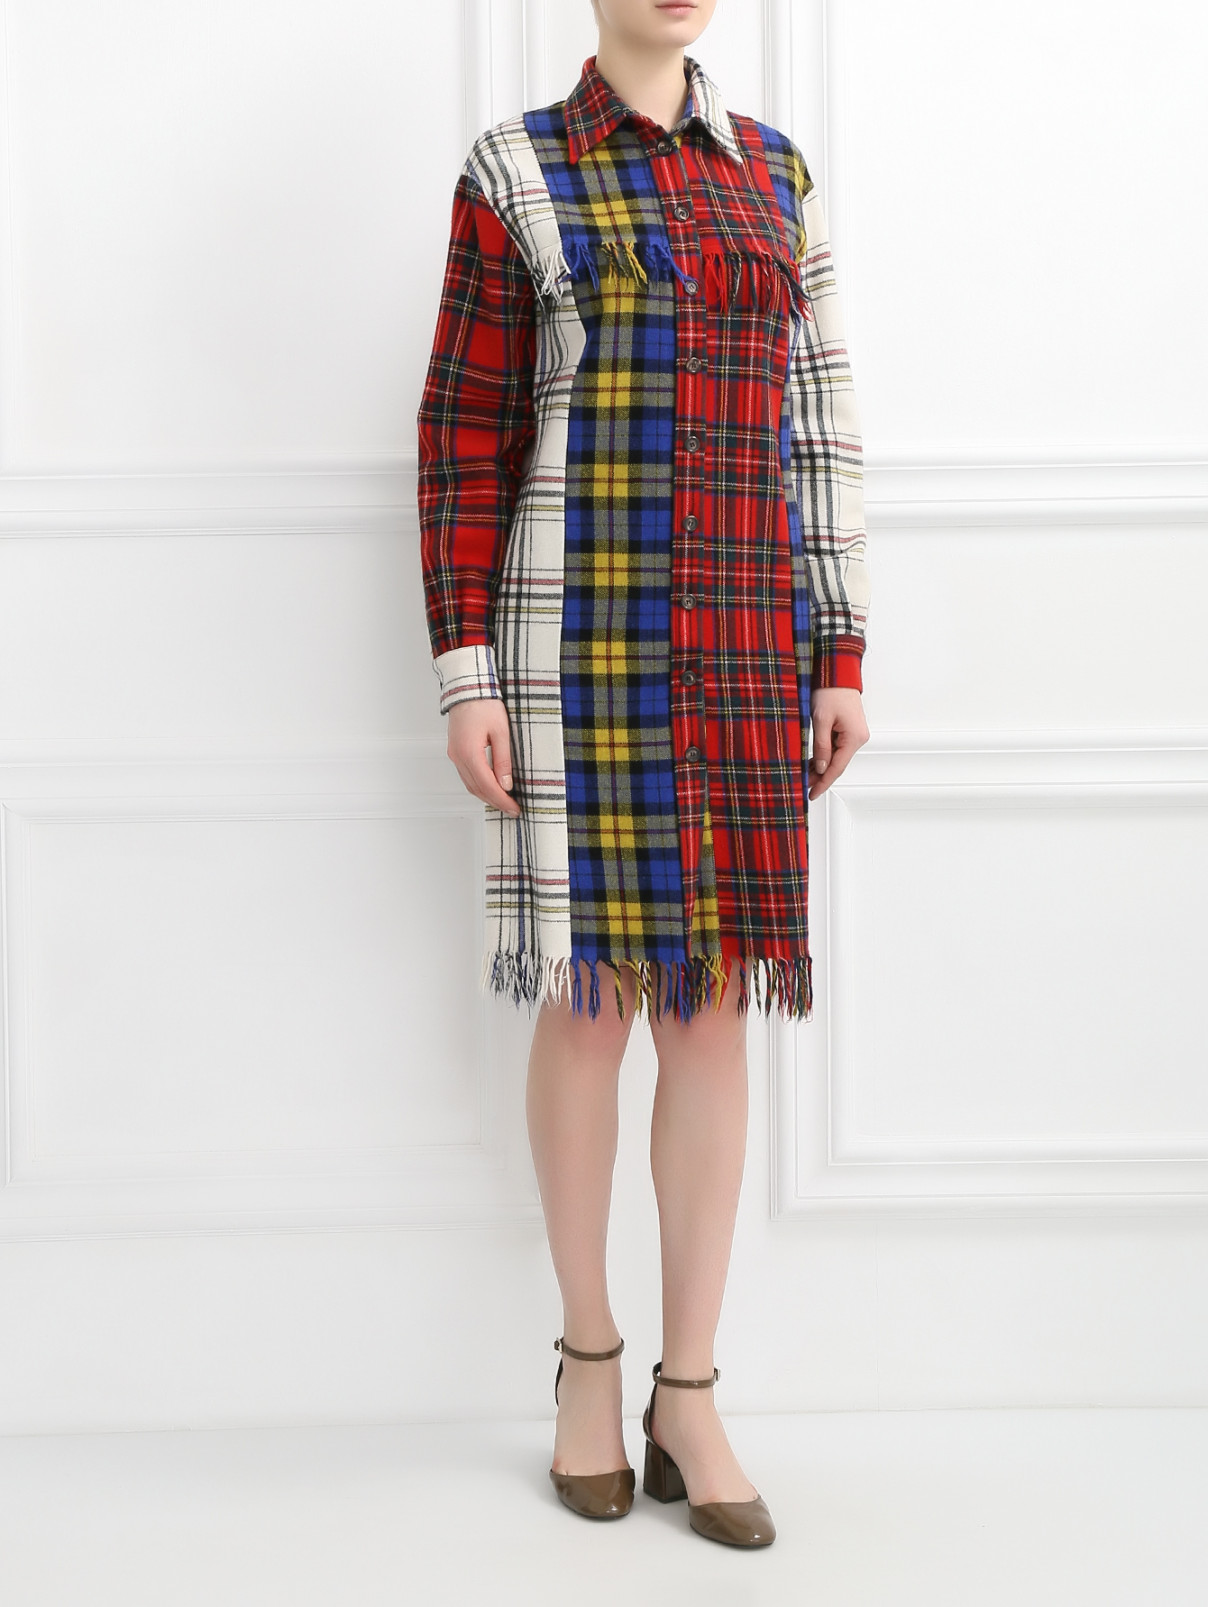 Платье из шерсти с узором "клетка" Moschino Couture  –  Модель Общий вид  – Цвет:  Узор